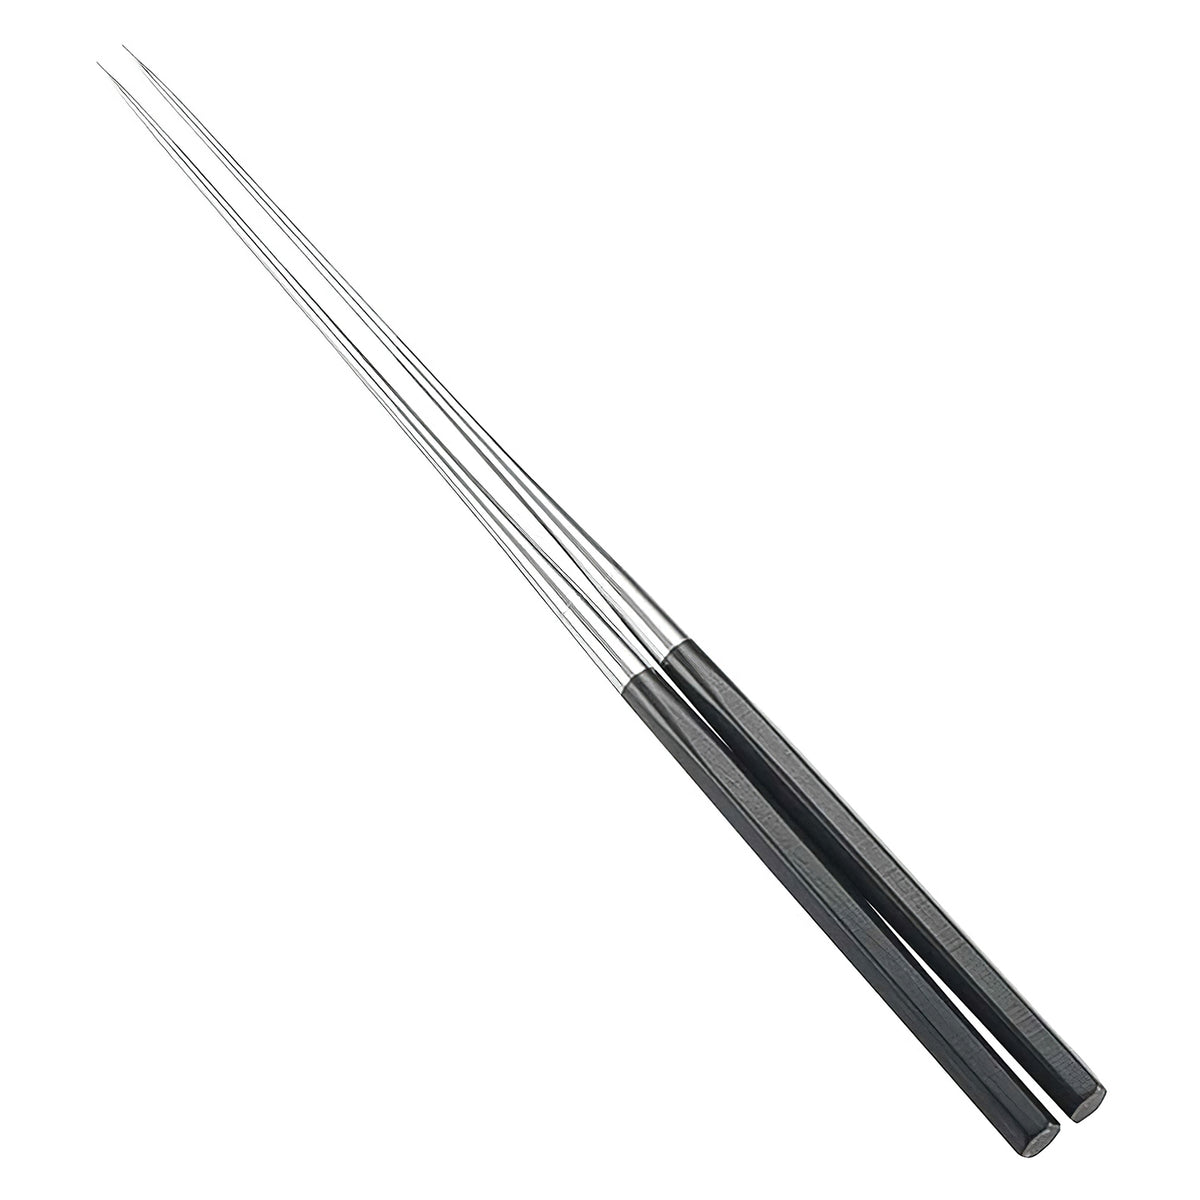 Kanaguchi Stainless Steel Hexagonal Serving Chopsticks